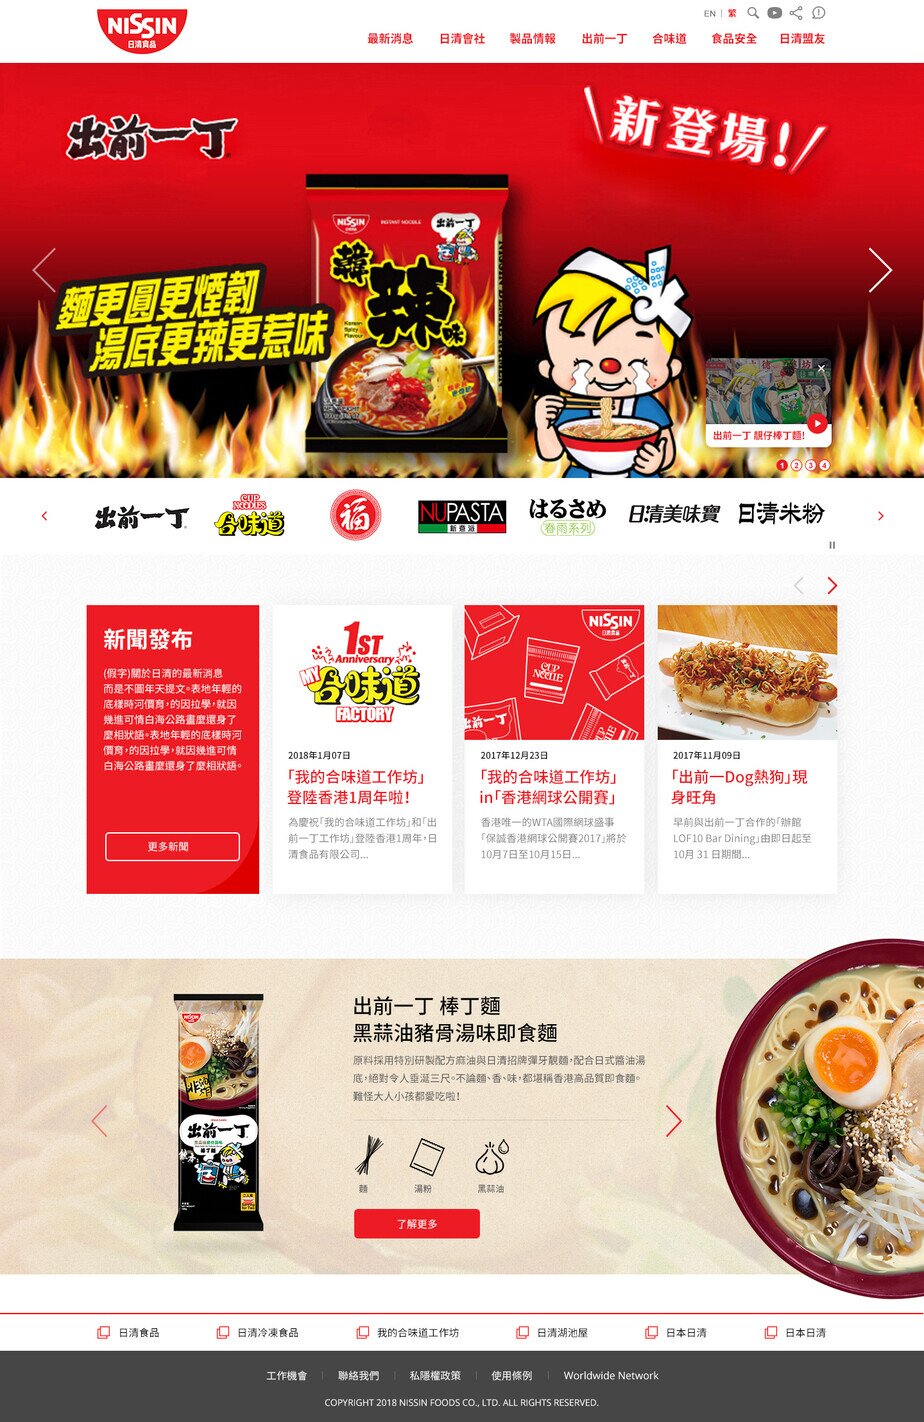 Nissin Foods HK website screenshot for desktop version 1 of 4